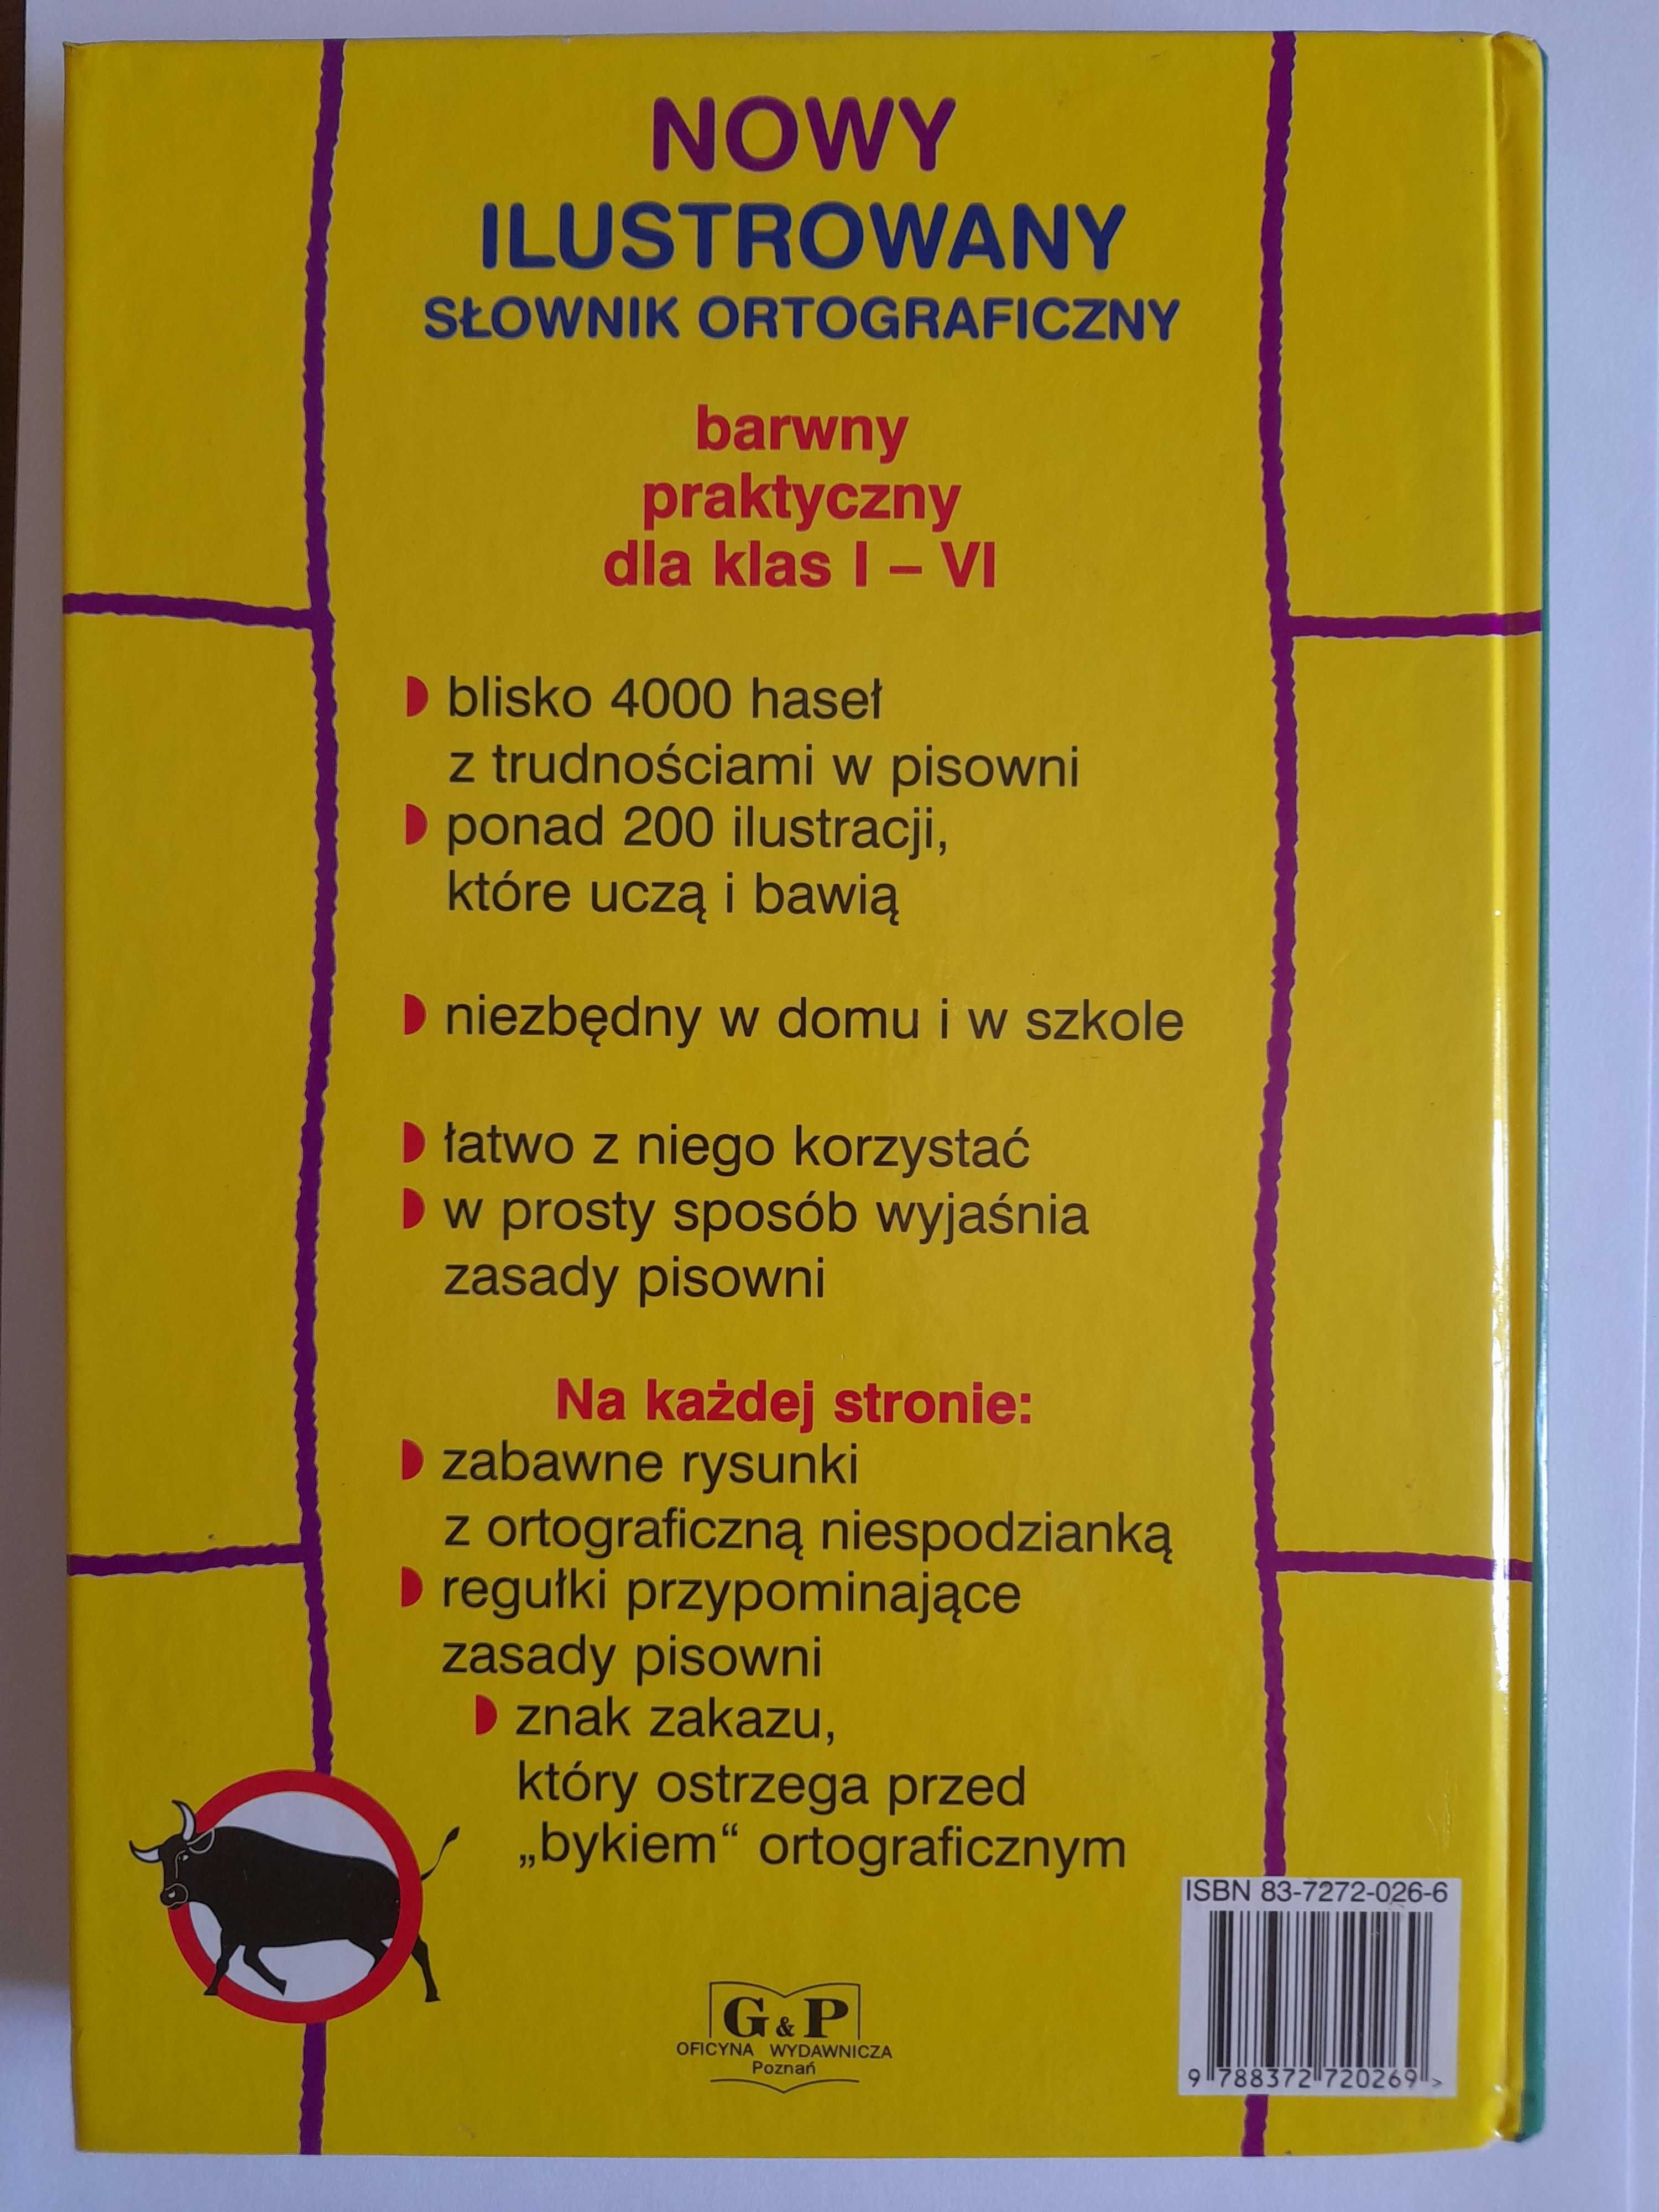 Nowy ilustrowany słownik ortograficzny - Kusztelski, Kusztelska